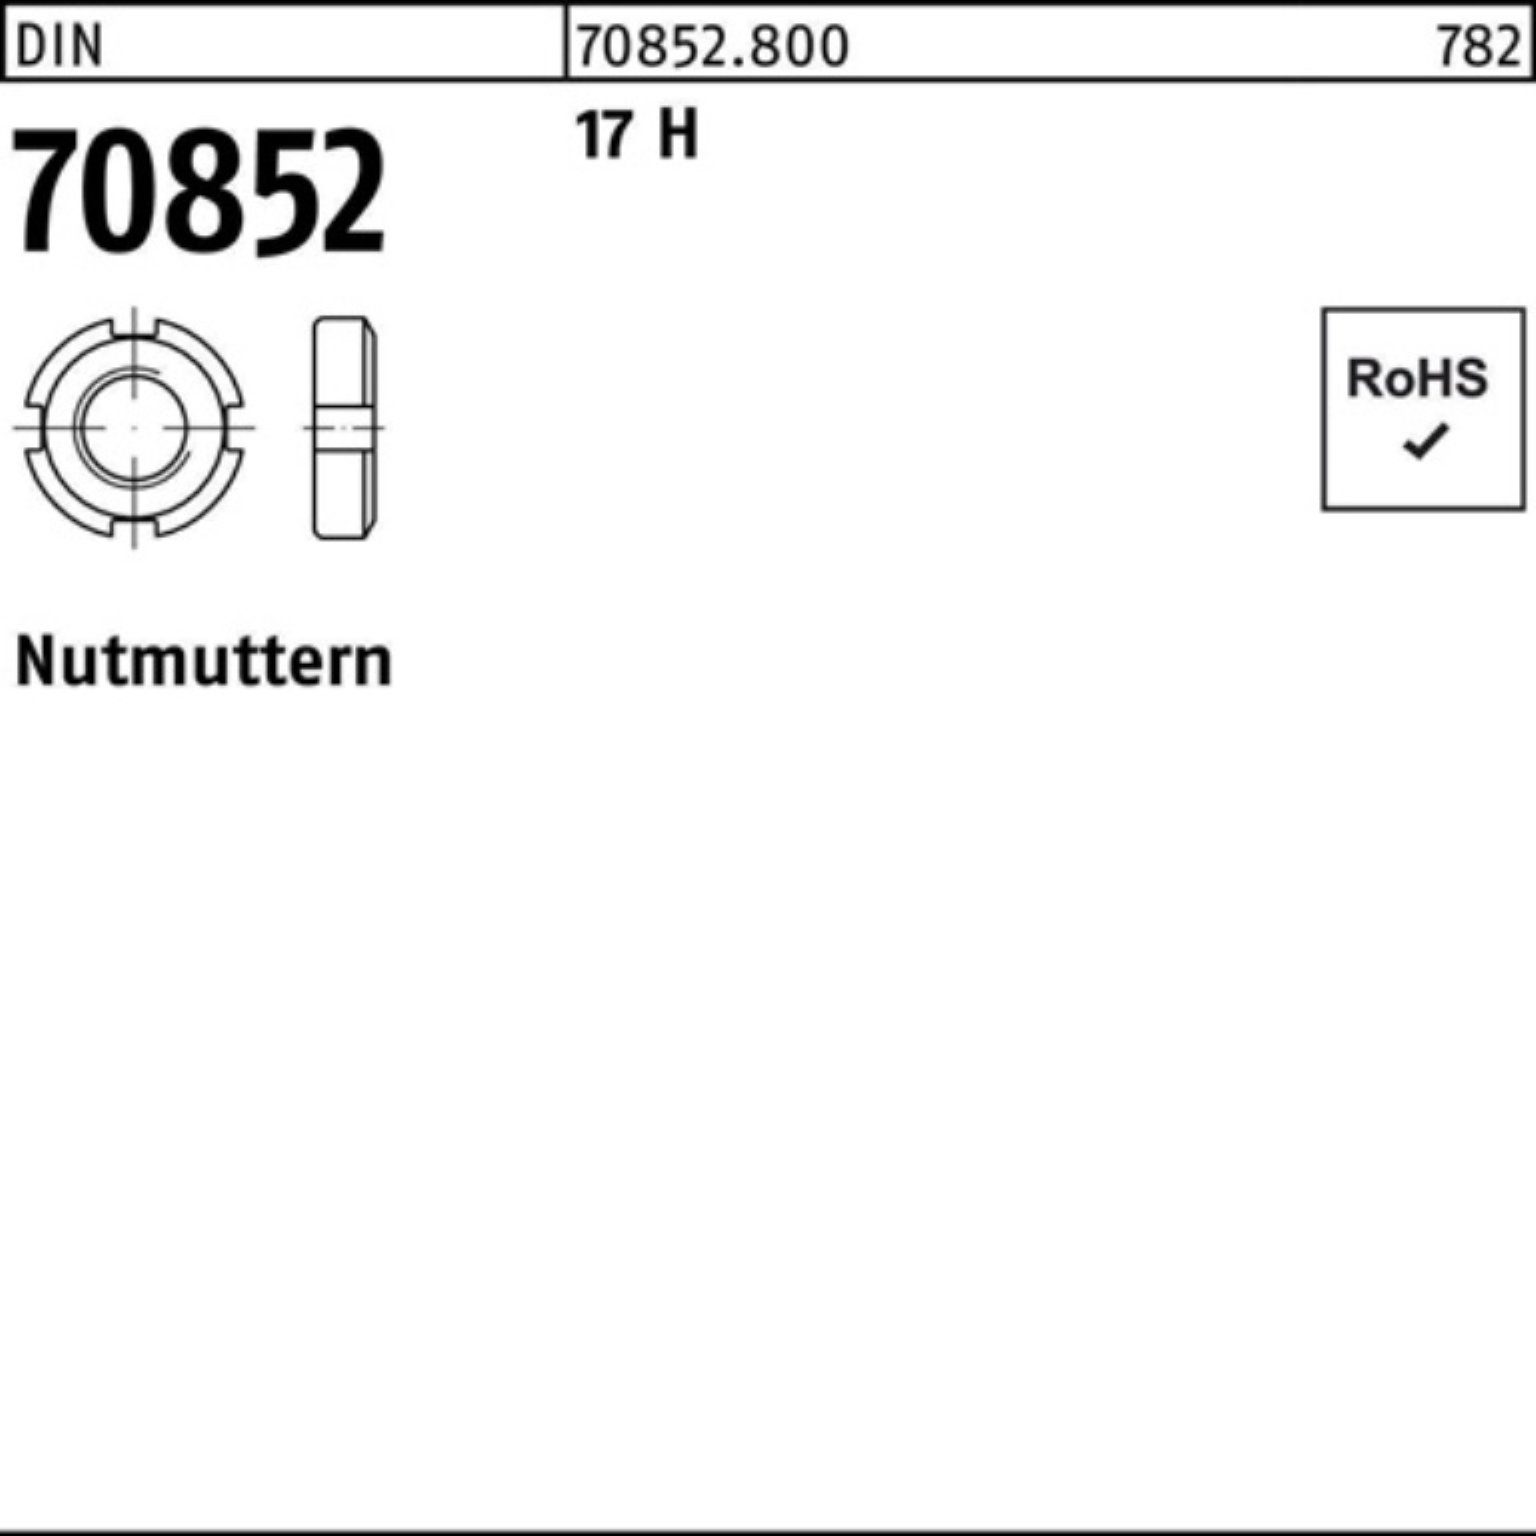 1,5 1 H 70852 70852 M80x N 17 Nutmutter Reyher Nutmutter DIN Pack DIN H Stück 17 100er